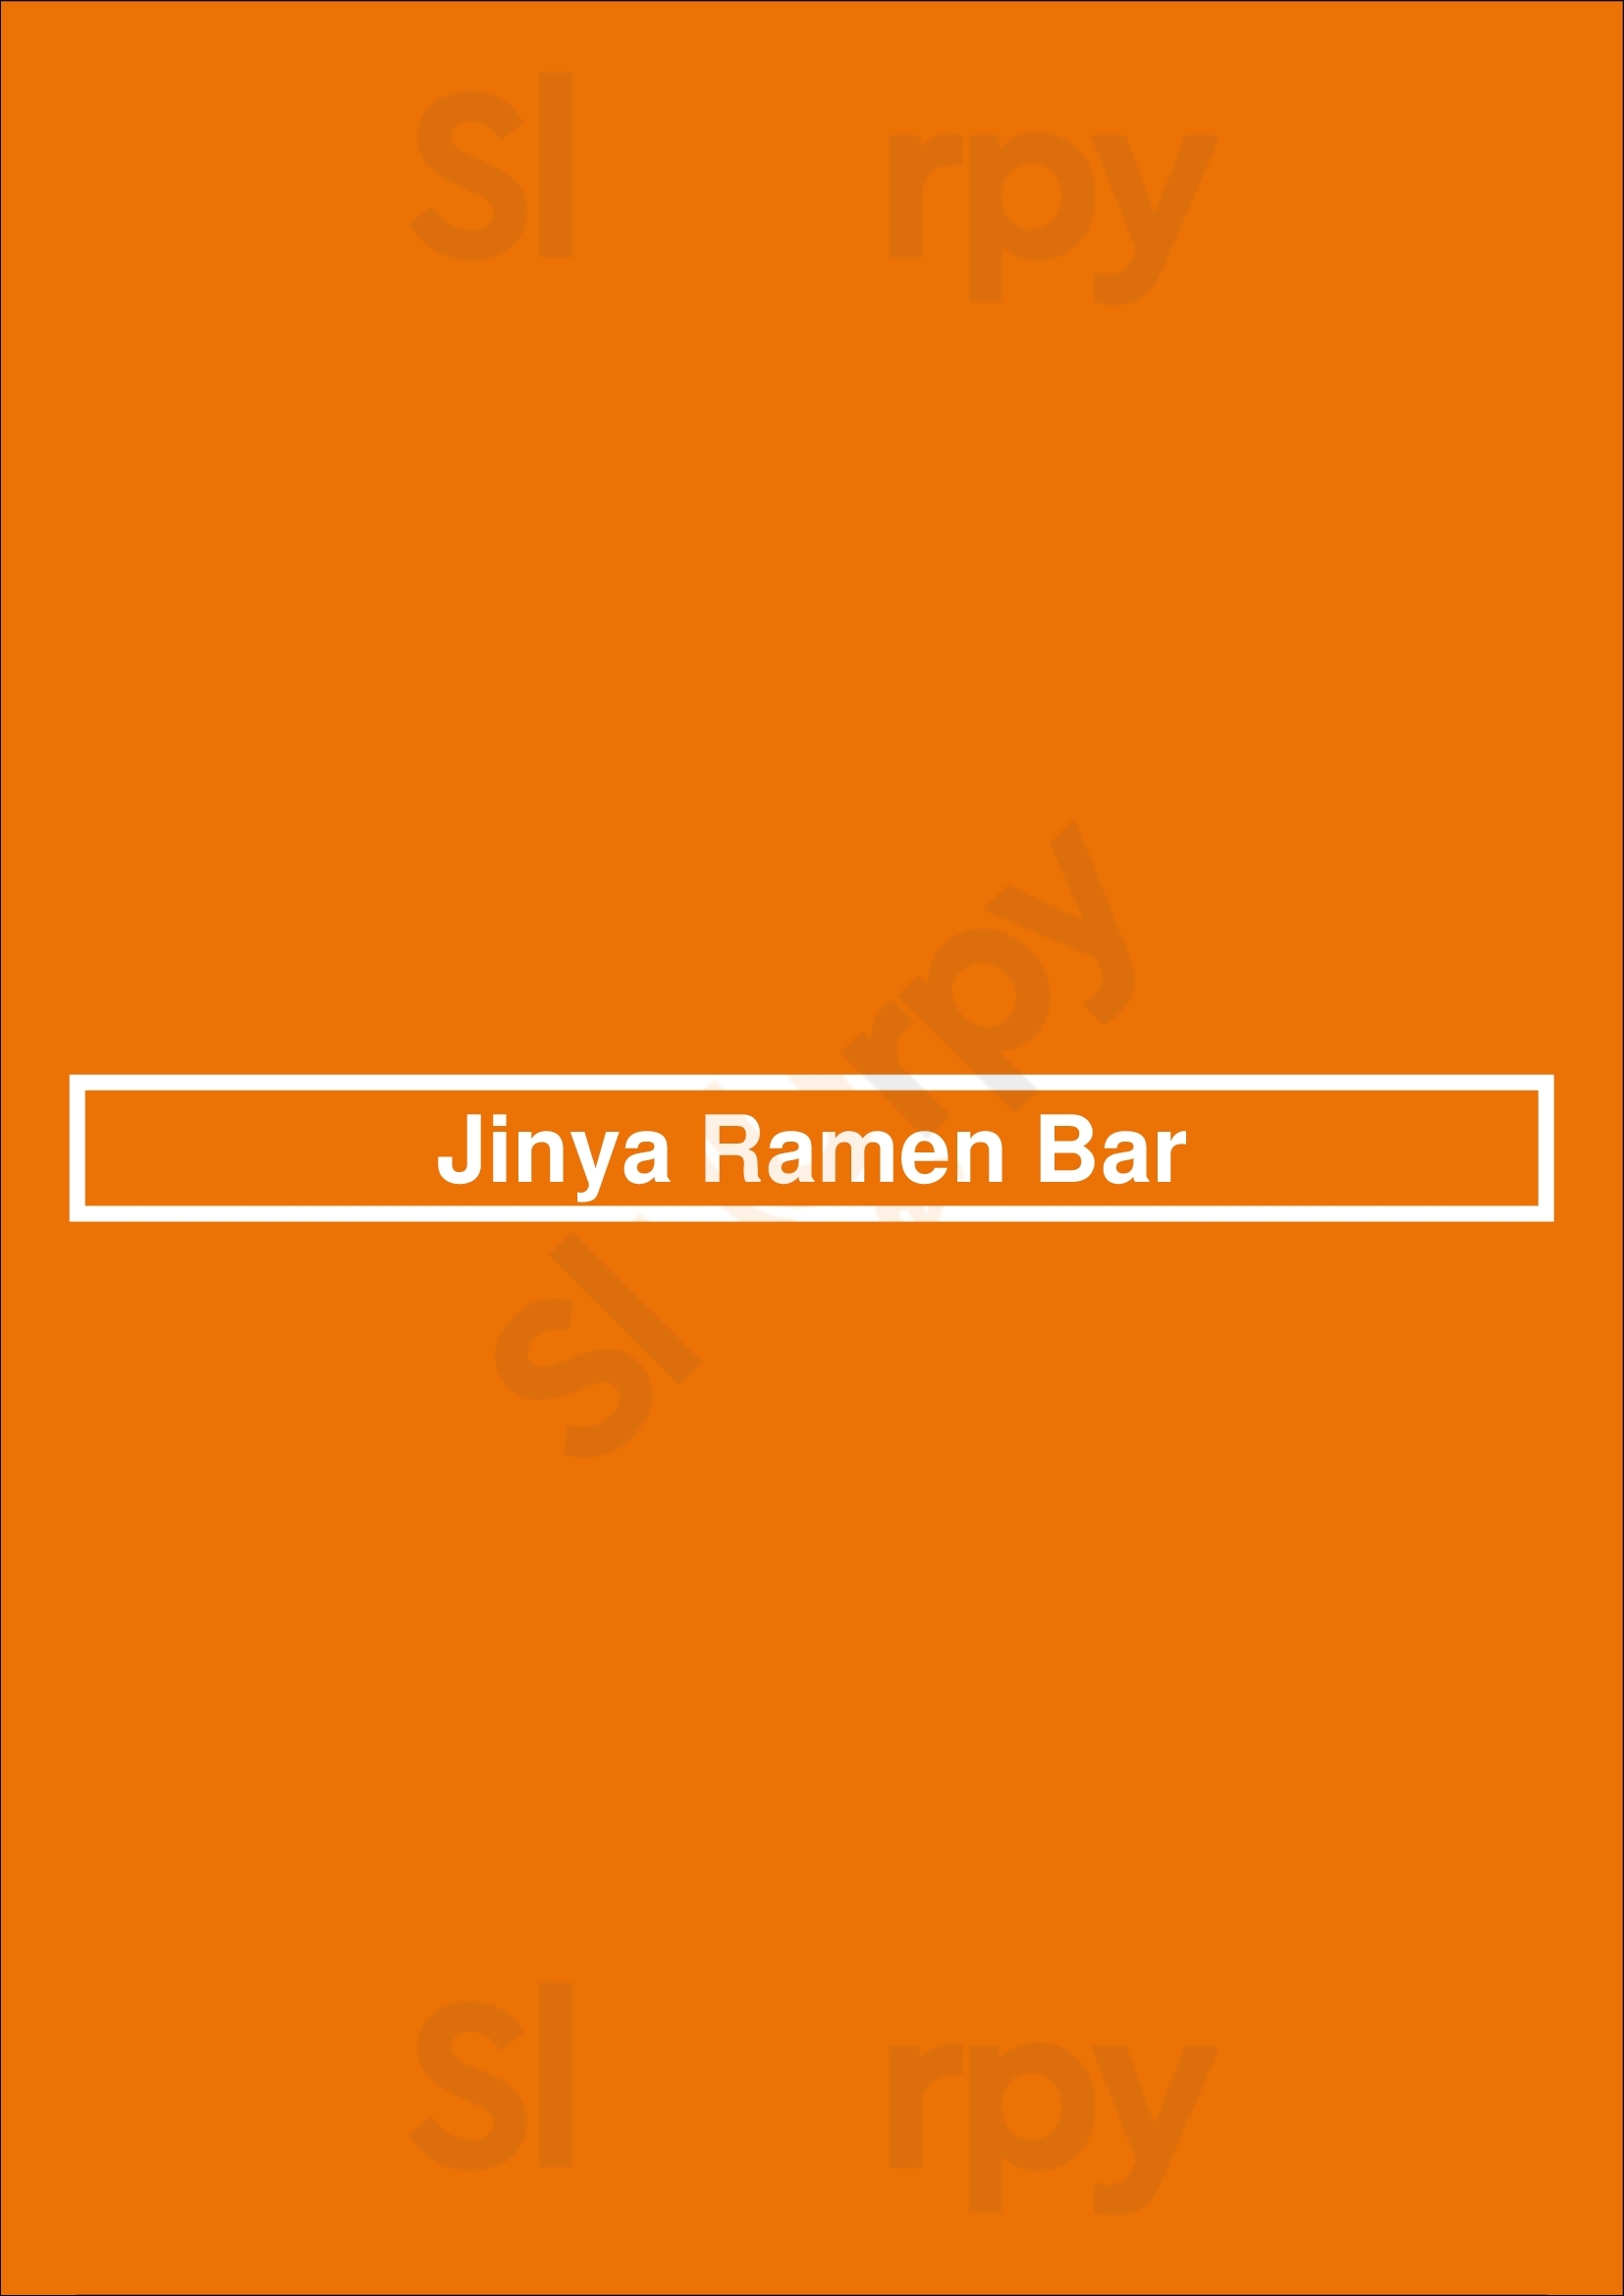 Jinya Ramen Bar - Fm 1960 Houston Menu - 1